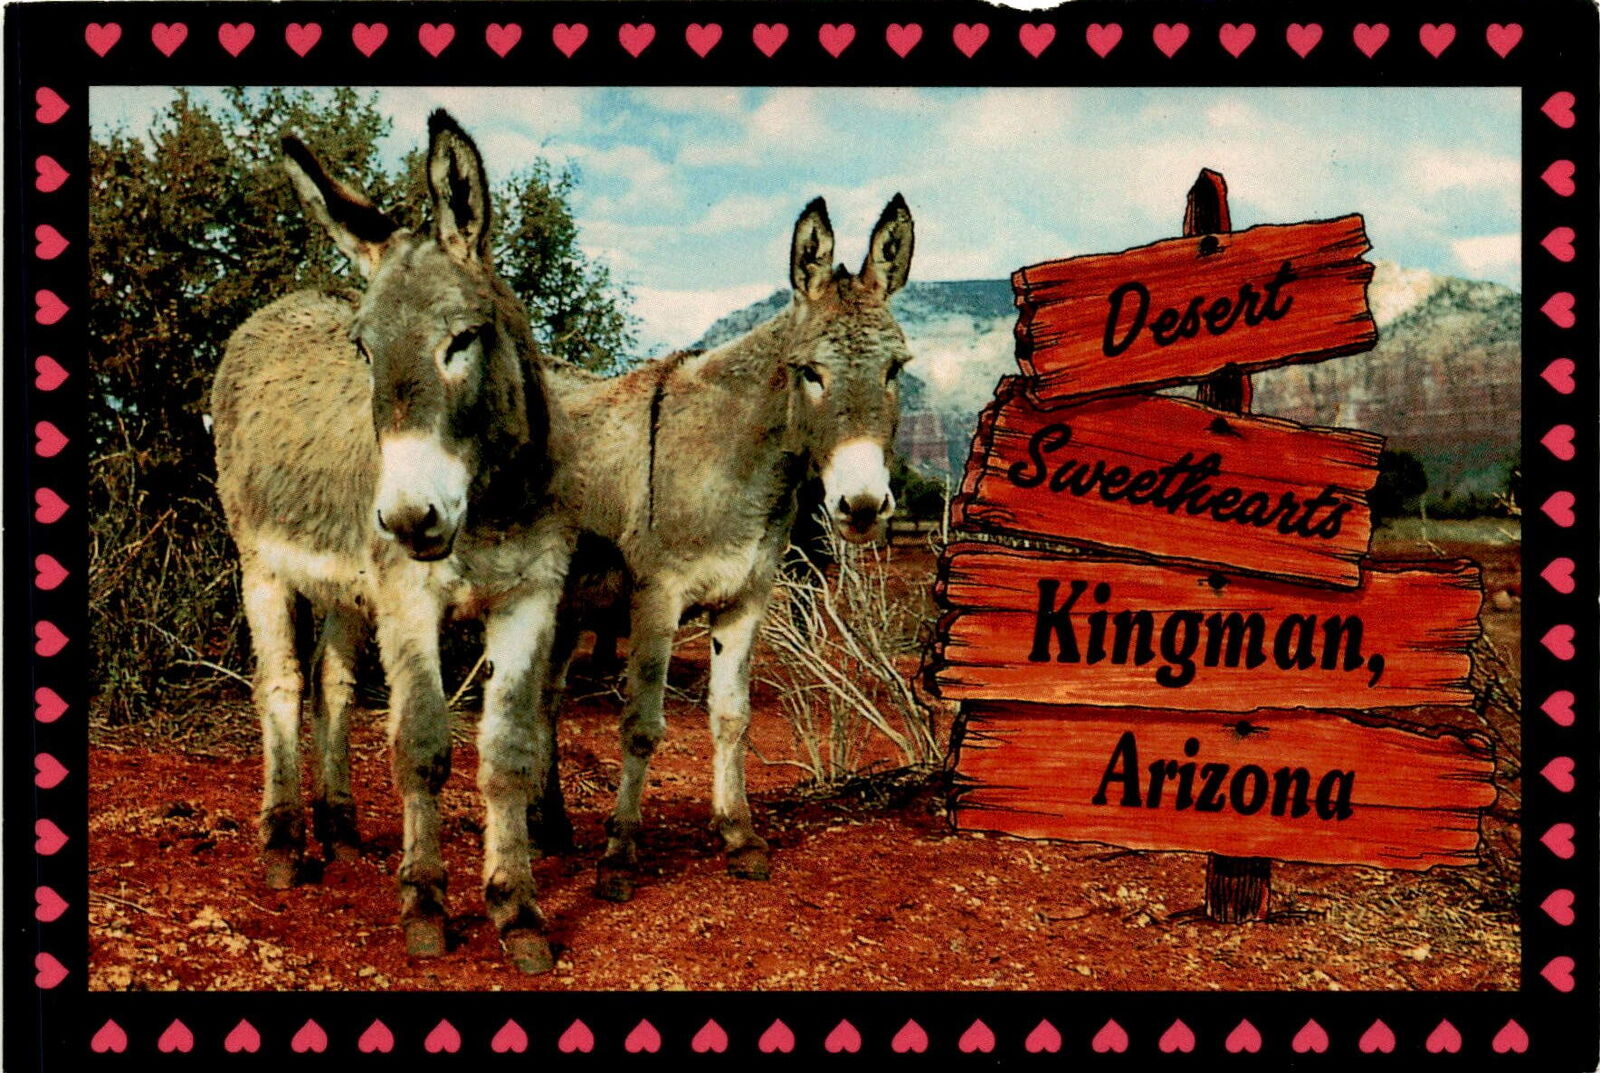 Kingman Arizona Mohave County Grand Canyon Route 66 SmithSouthwestern postcard